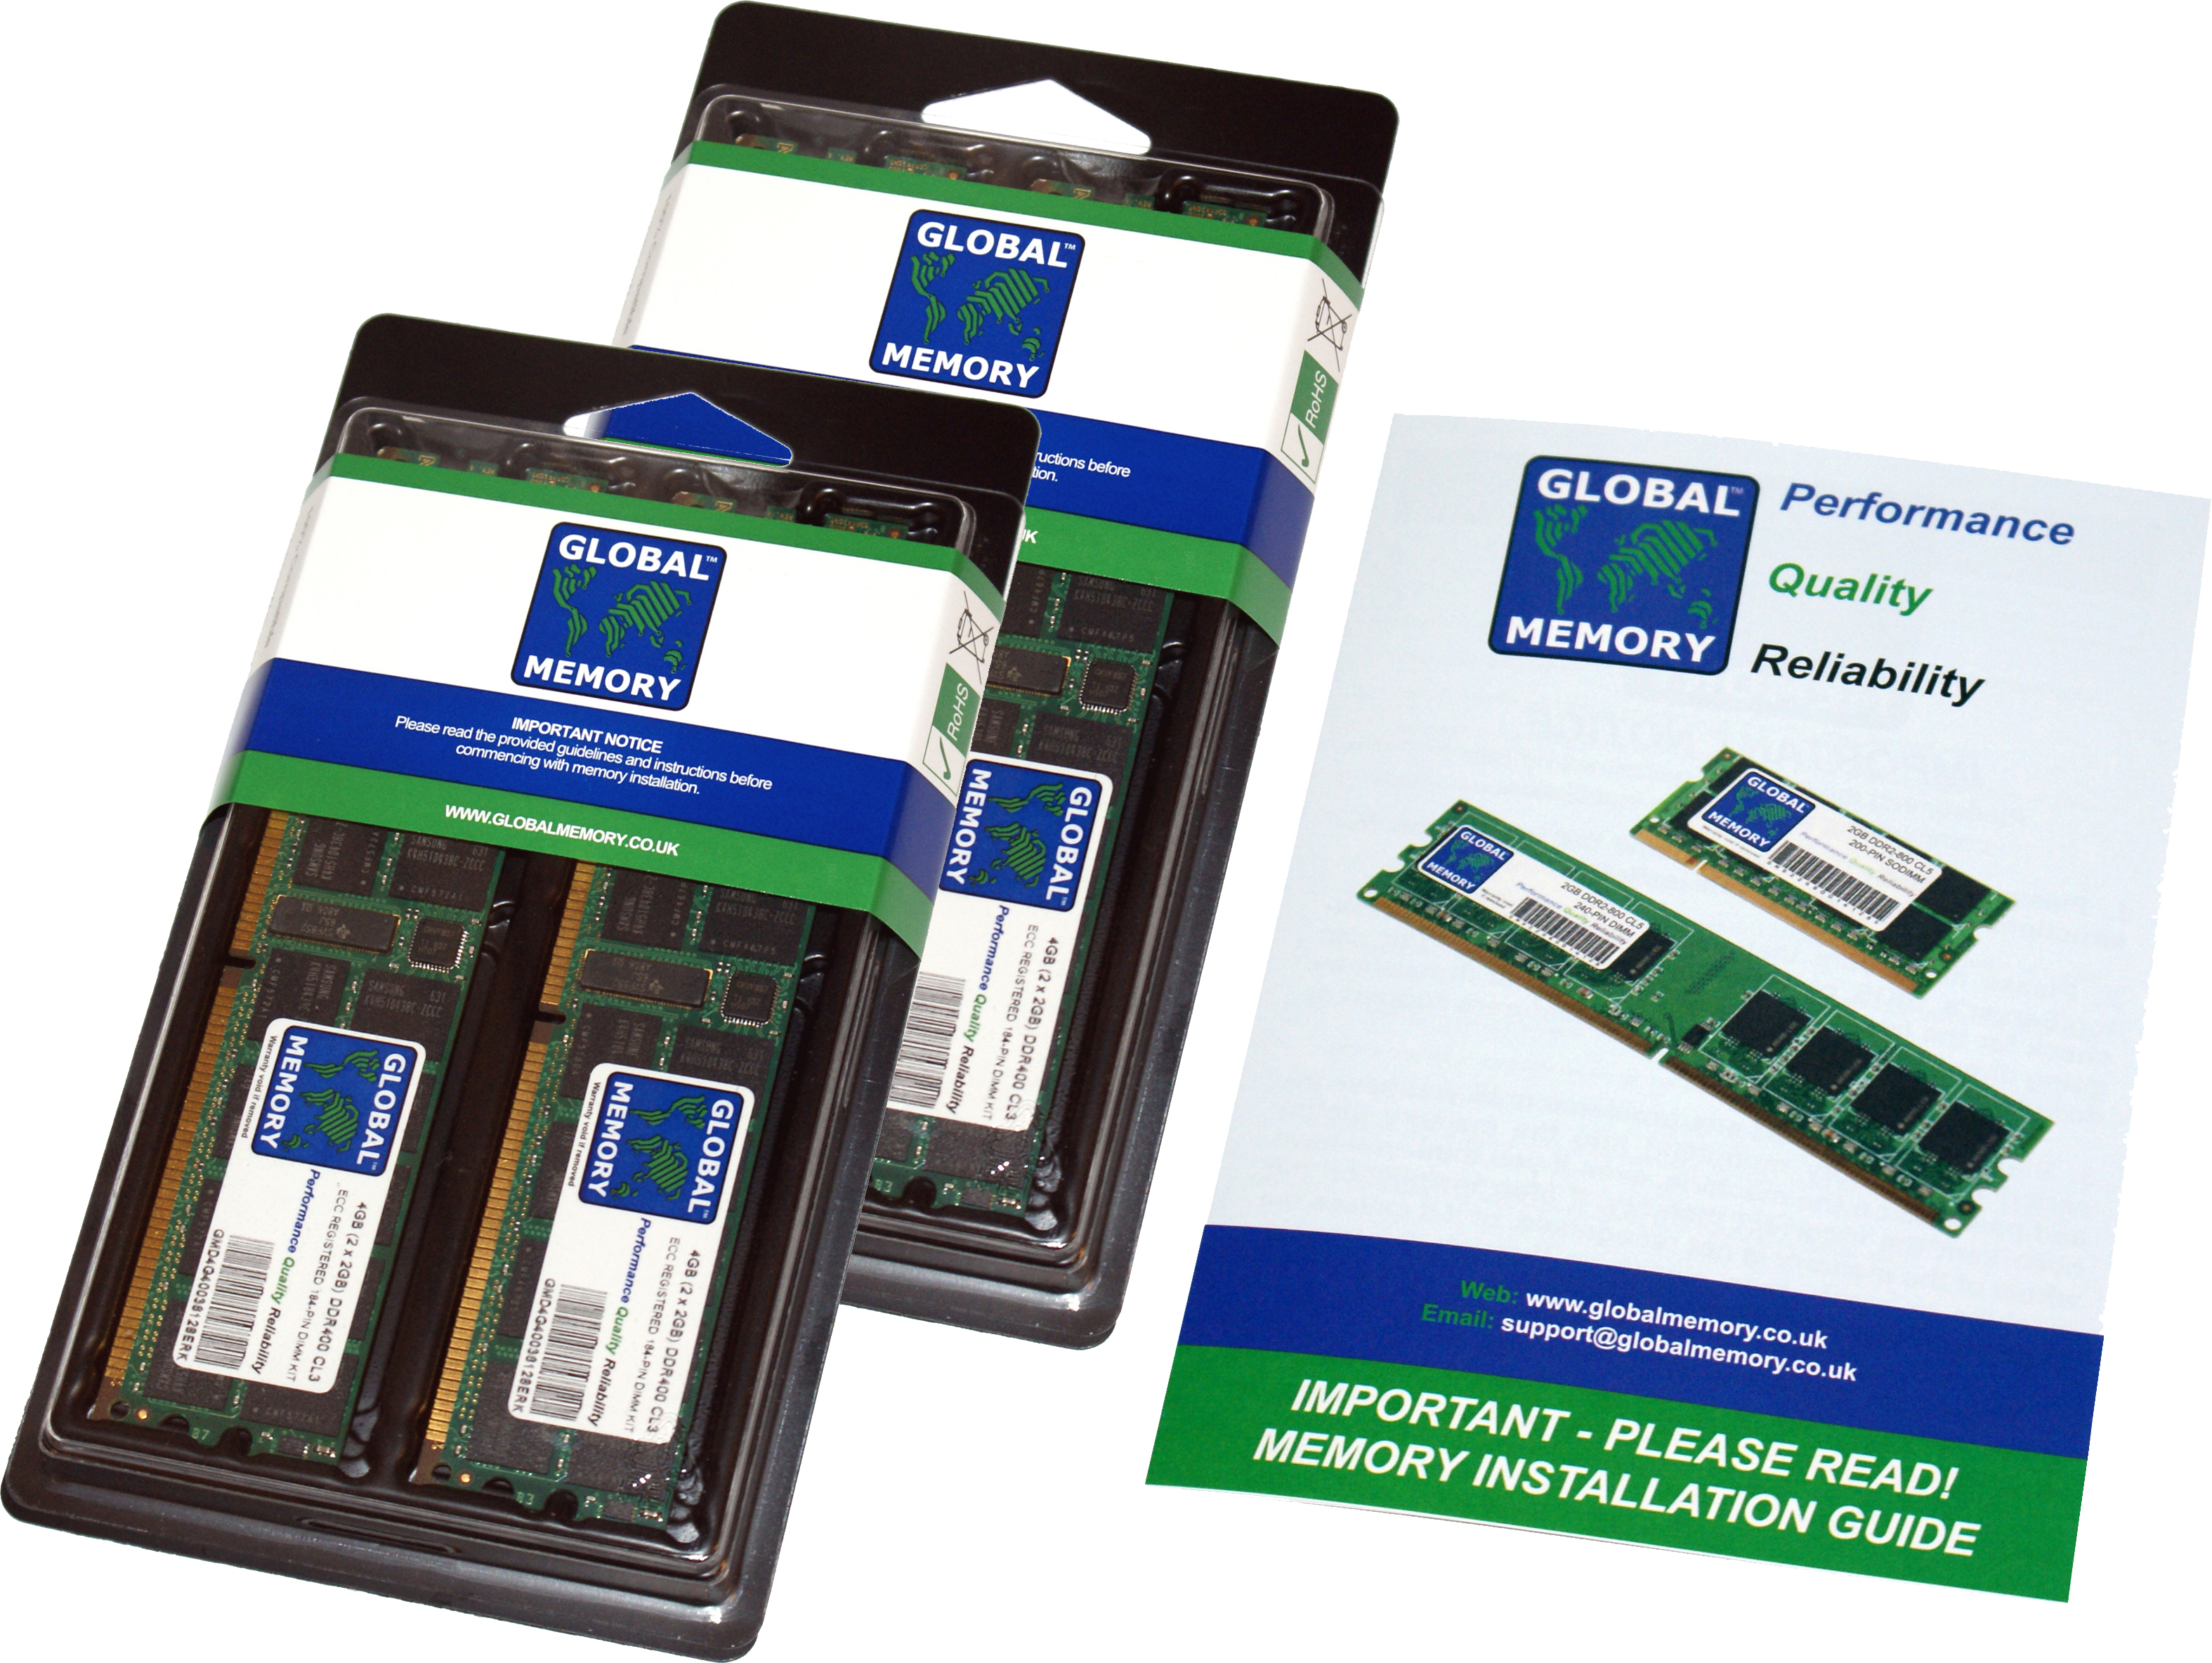 256GB (4 x 64GB) DDR4 2666MHz PC4-21300 288-PIN LOAD REDUCED ECC REGISTERED DIMM (LRDIMM) MEMORY RAM KIT FOR SUN SERVERS/WORKSTATIONS (16 RANK KIT CHIPKILL)